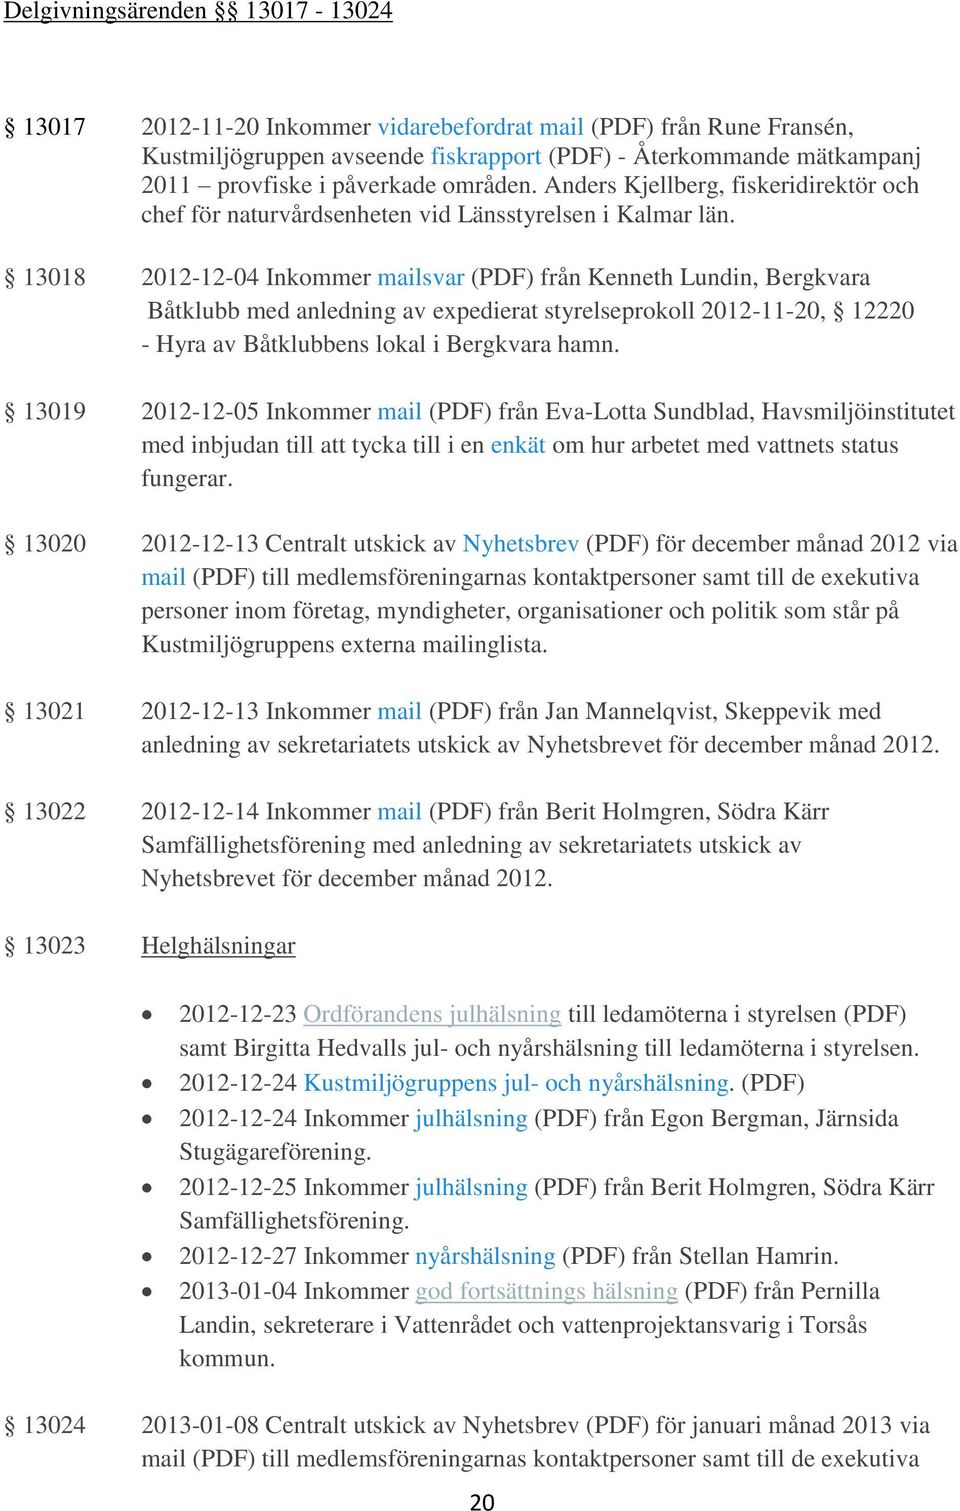 13018 2012-12-04 Inkommer mailsvar (PDF) från Kenneth Lundin, Bergkvara Båtklubb med anledning av expedierat styrelseprokoll 2012-11-20, 12220 - Hyra av Båtklubbens lokal i Bergkvara hamn.